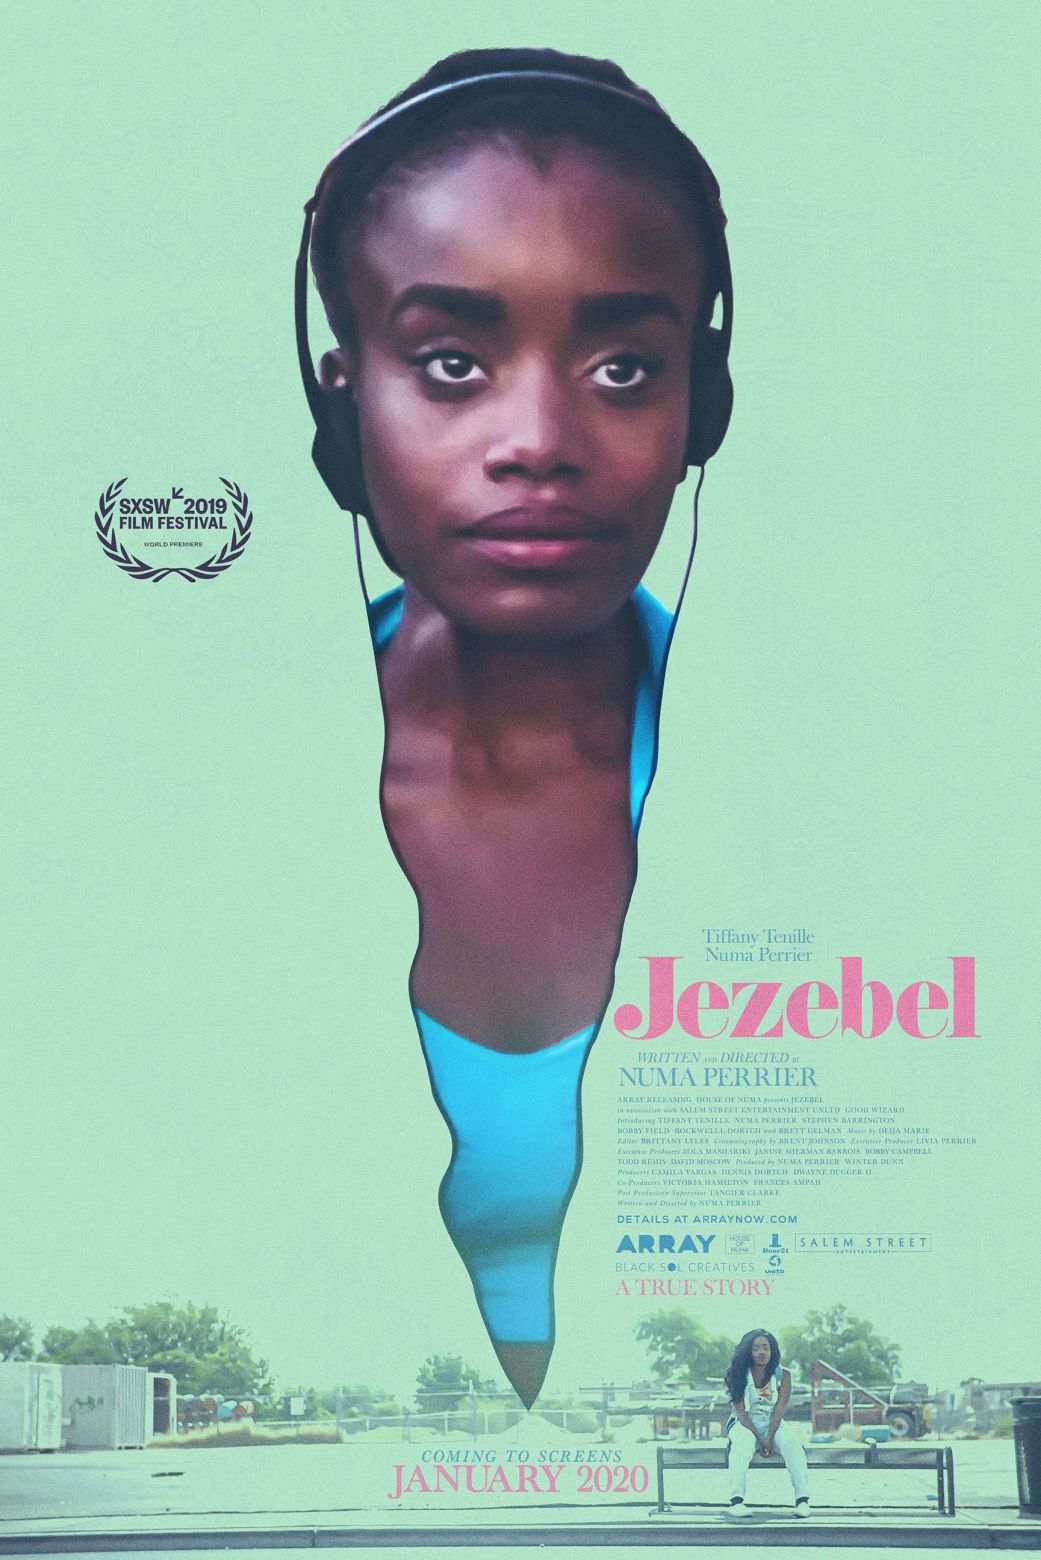 Jezebel Netflix